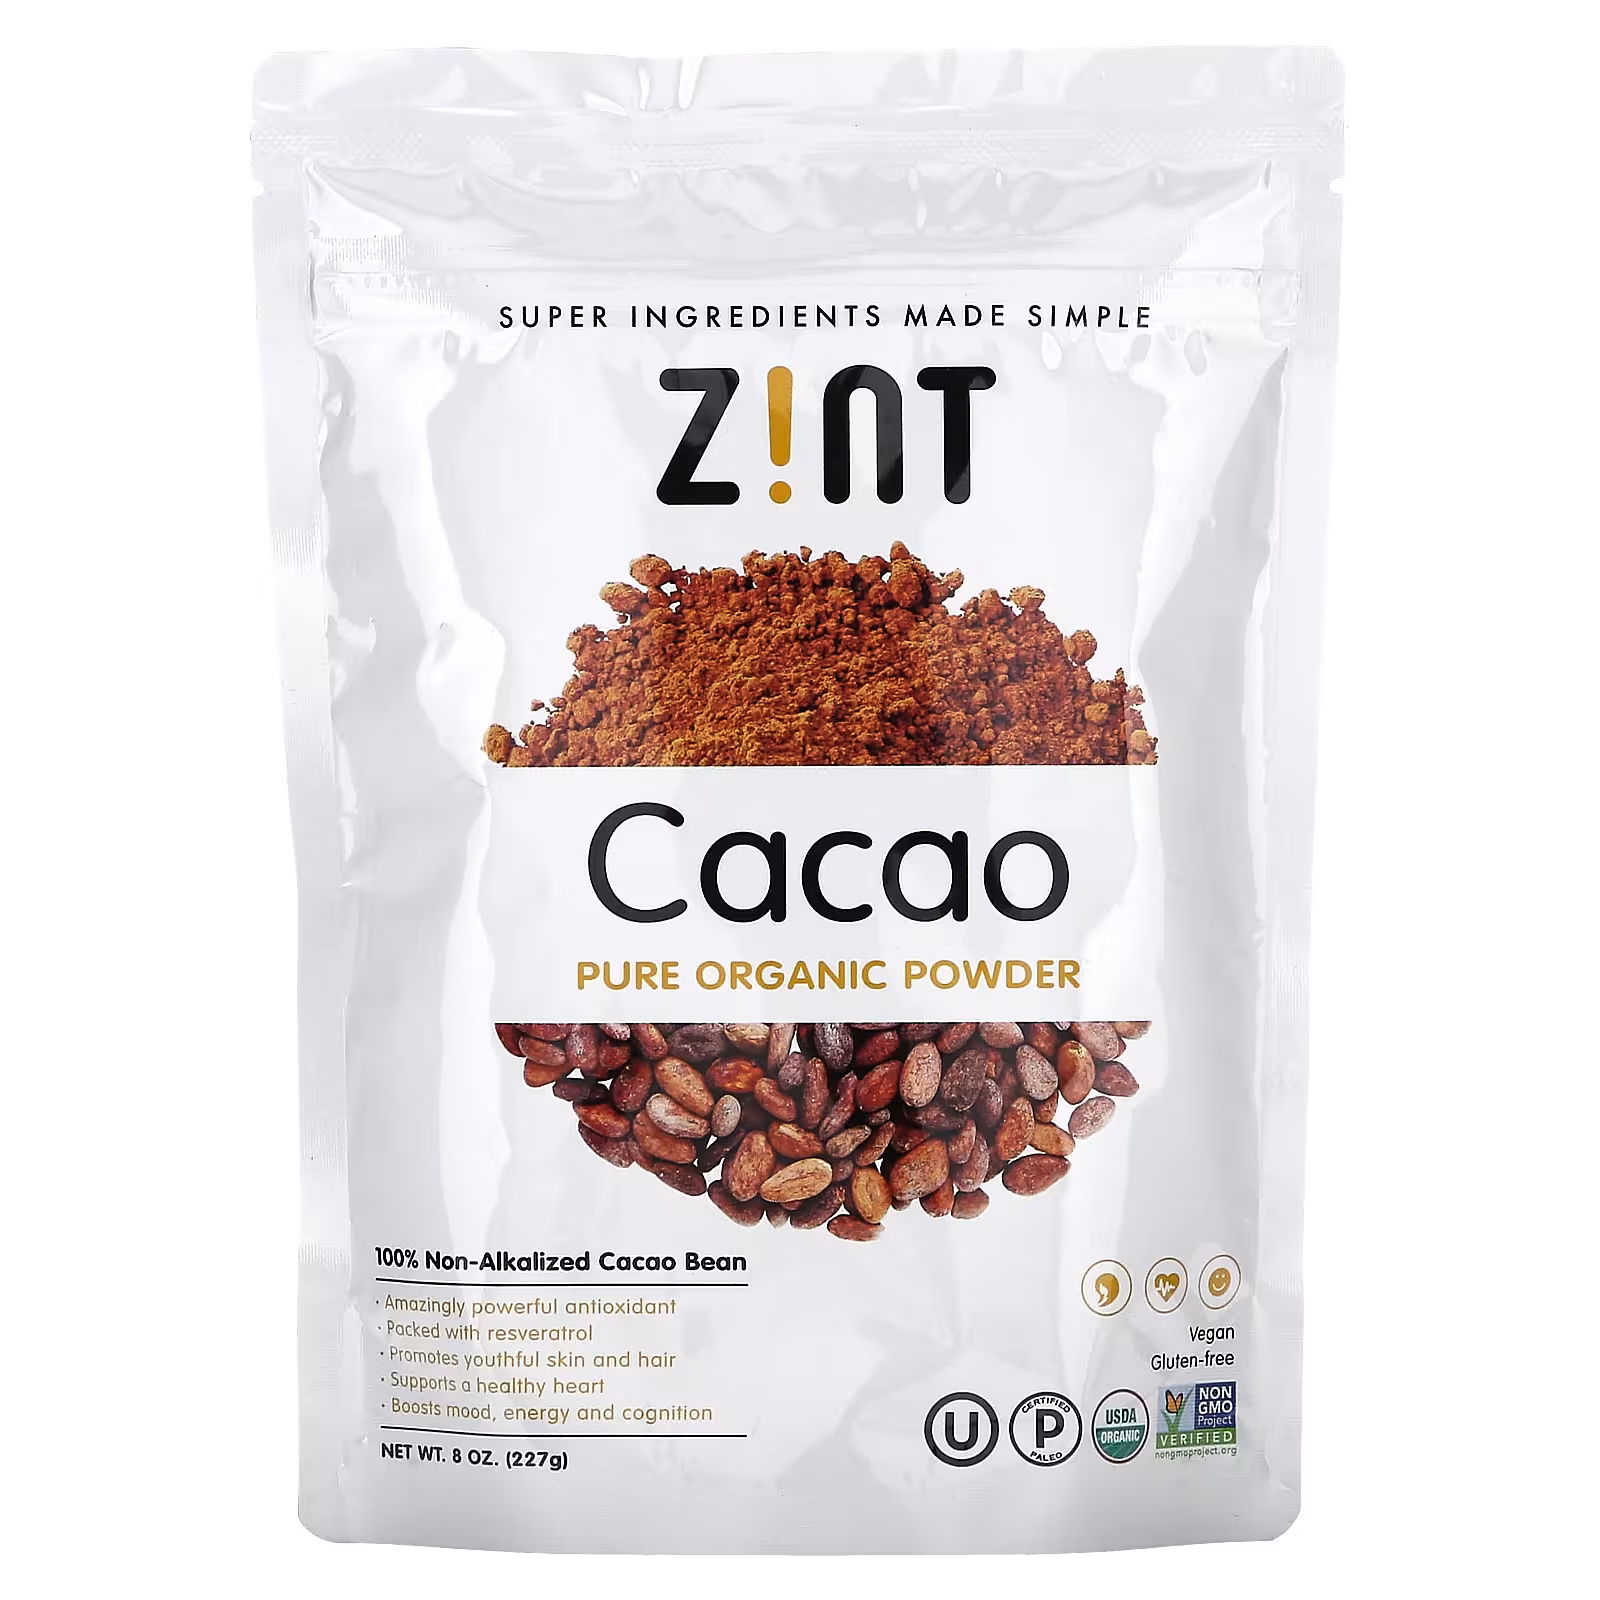 Порошок какао Zint Pure Organic, 227 г zint мака органический желатинизированный порошок 8 унц 227 г